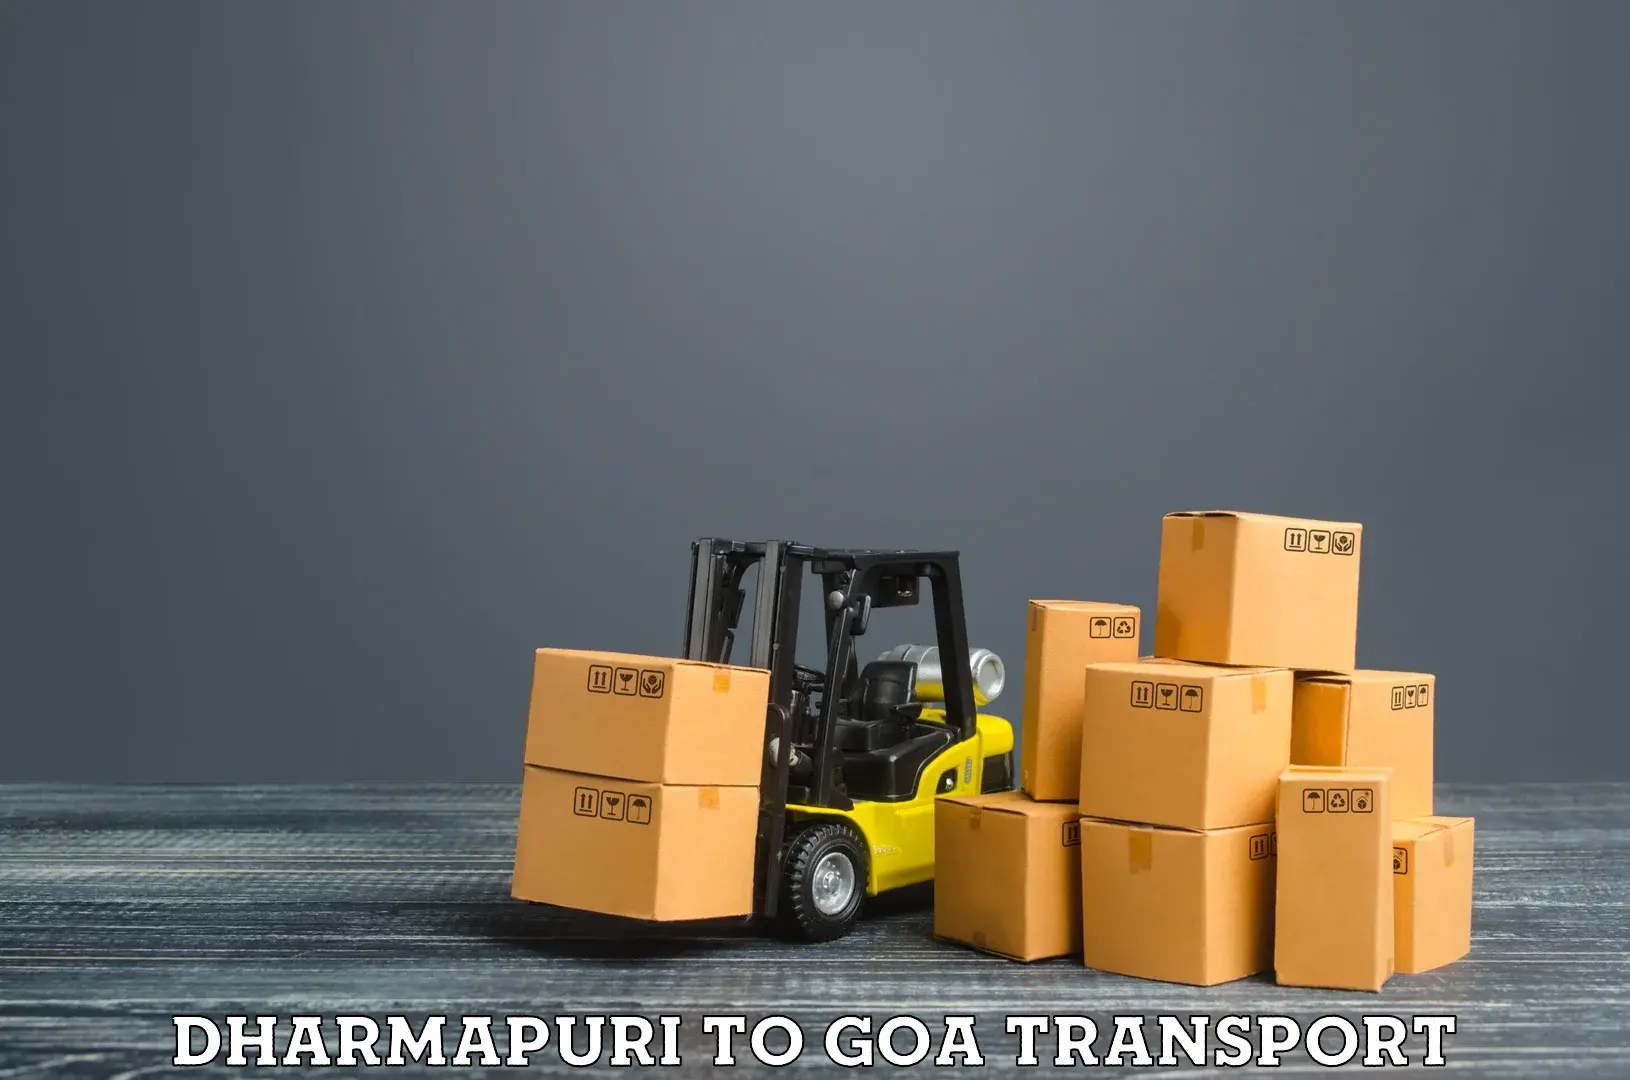 Intercity transport Dharmapuri to IIT Goa